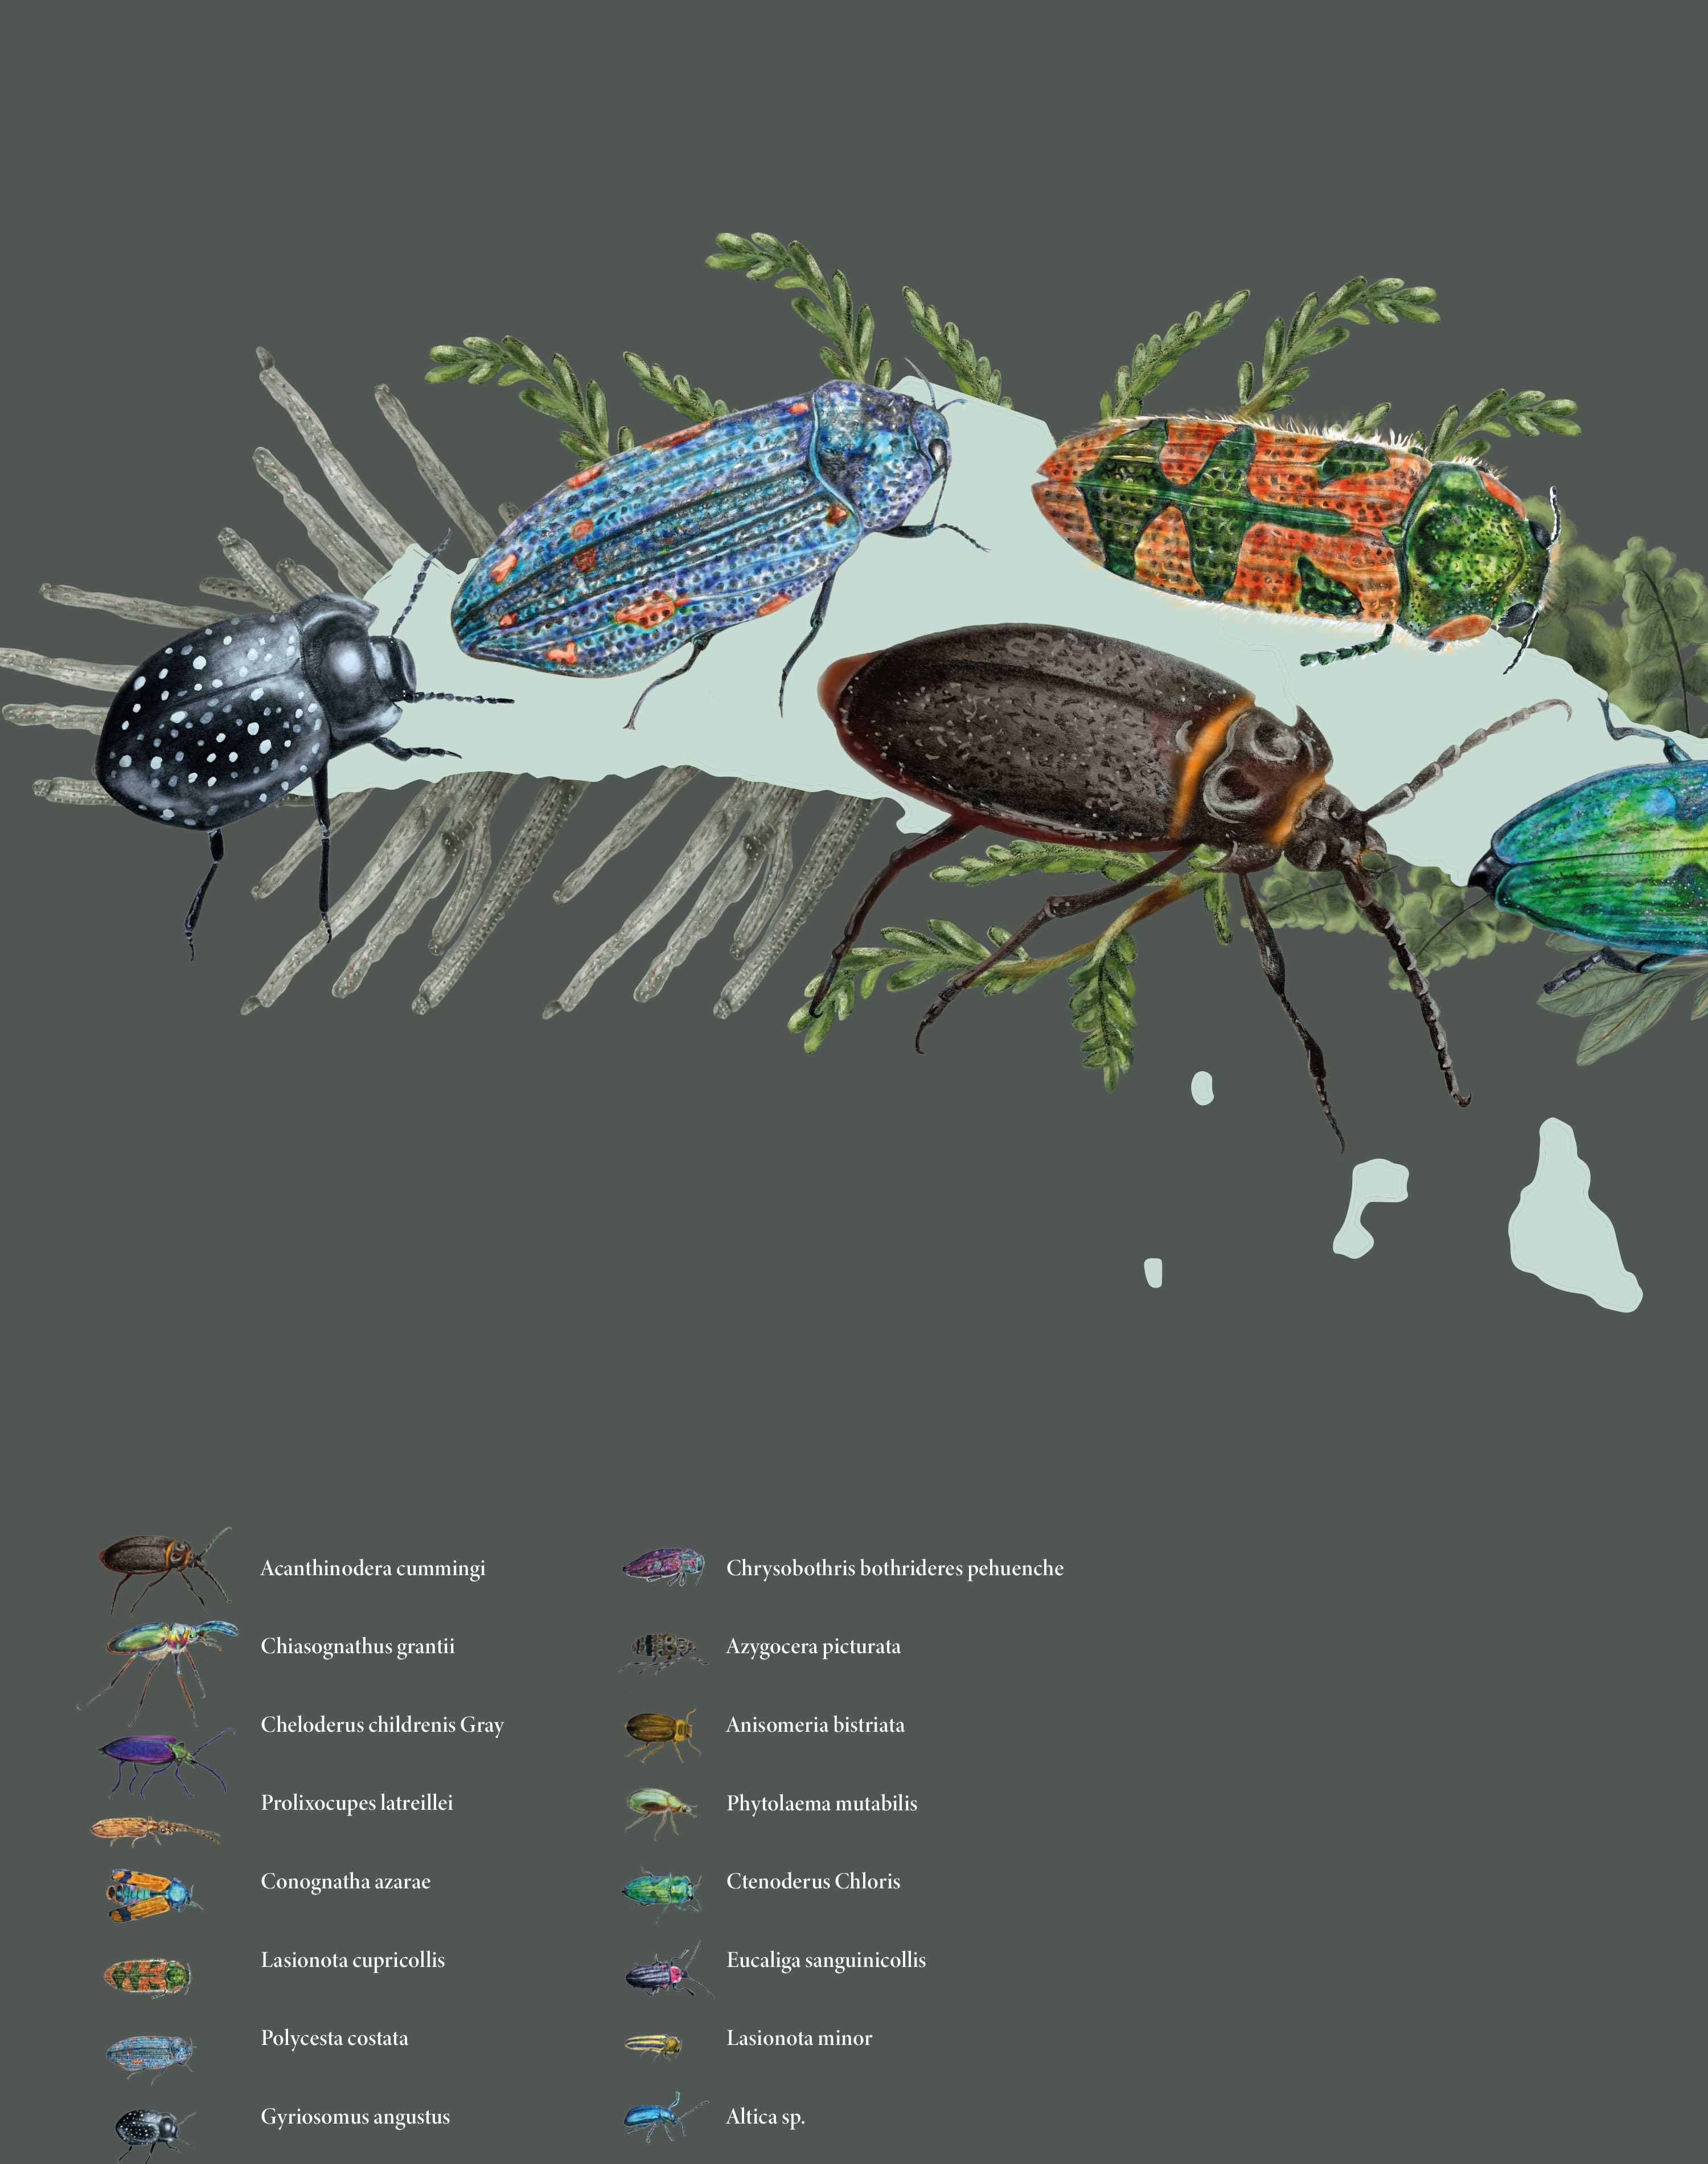 Mapa de Escarabajos de Chile - Enmarcado A PEDIDO